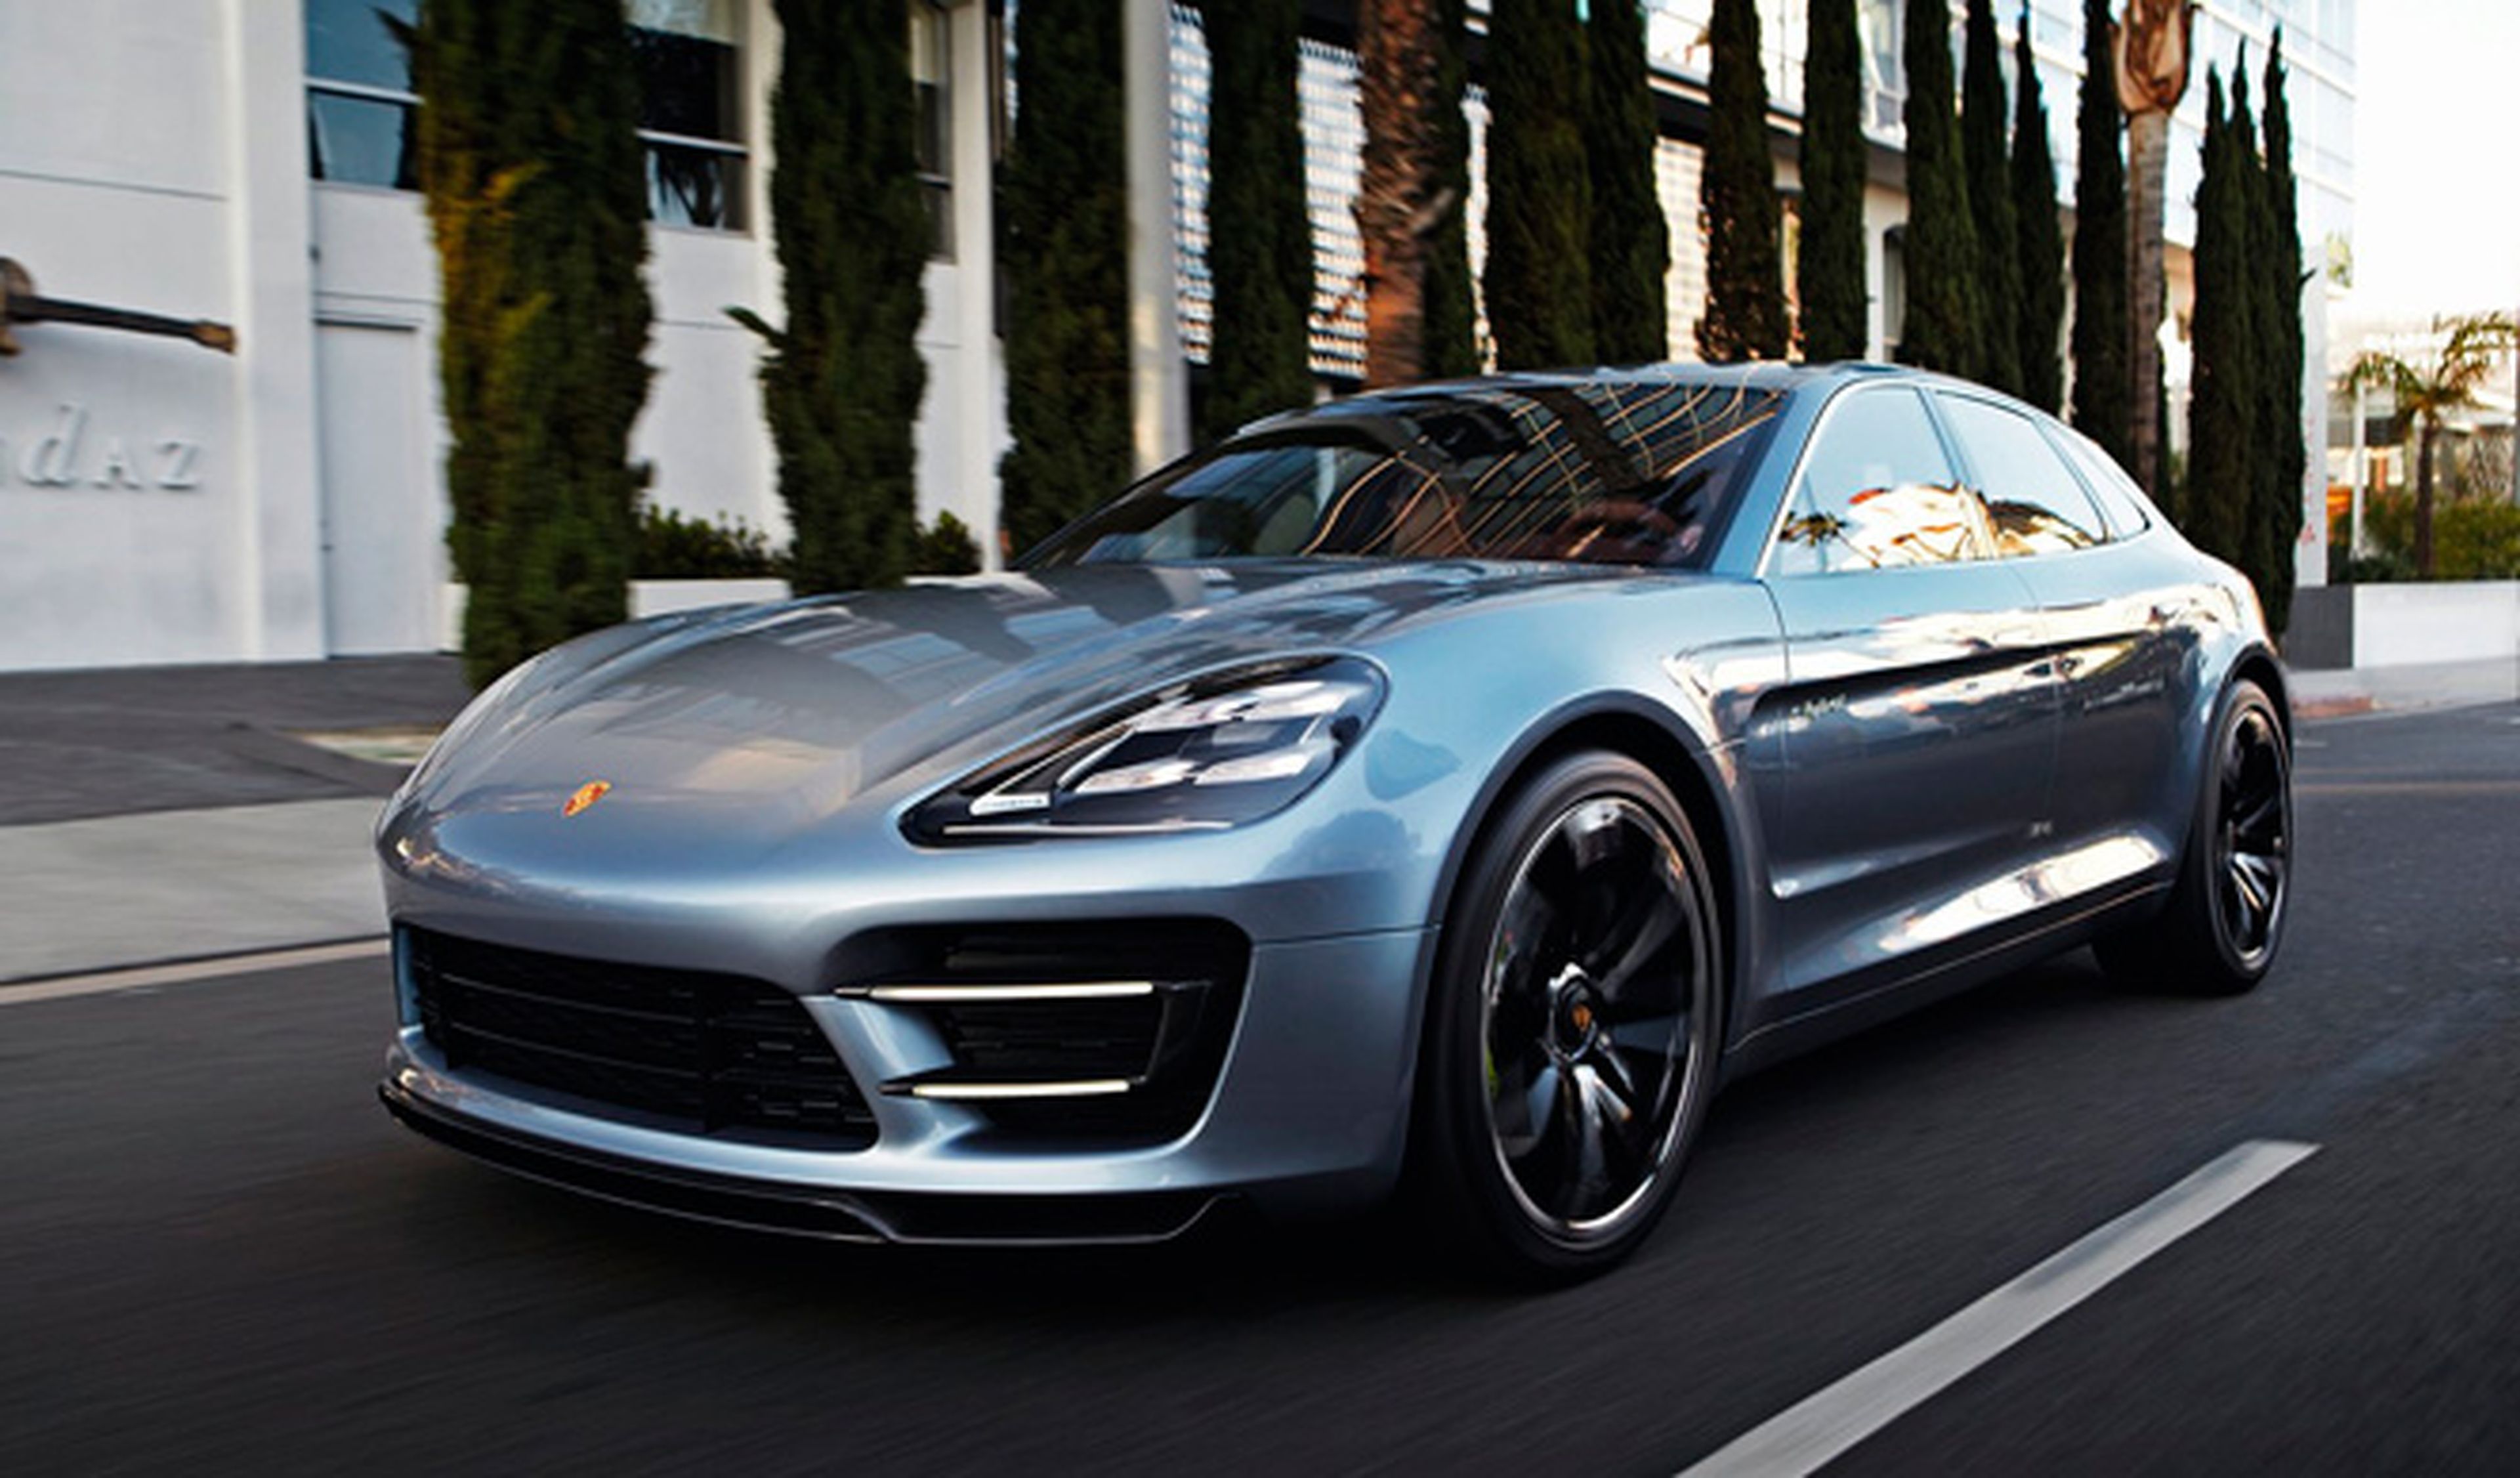 Porsche planea un modelo eléctrico por debajo del Panamera